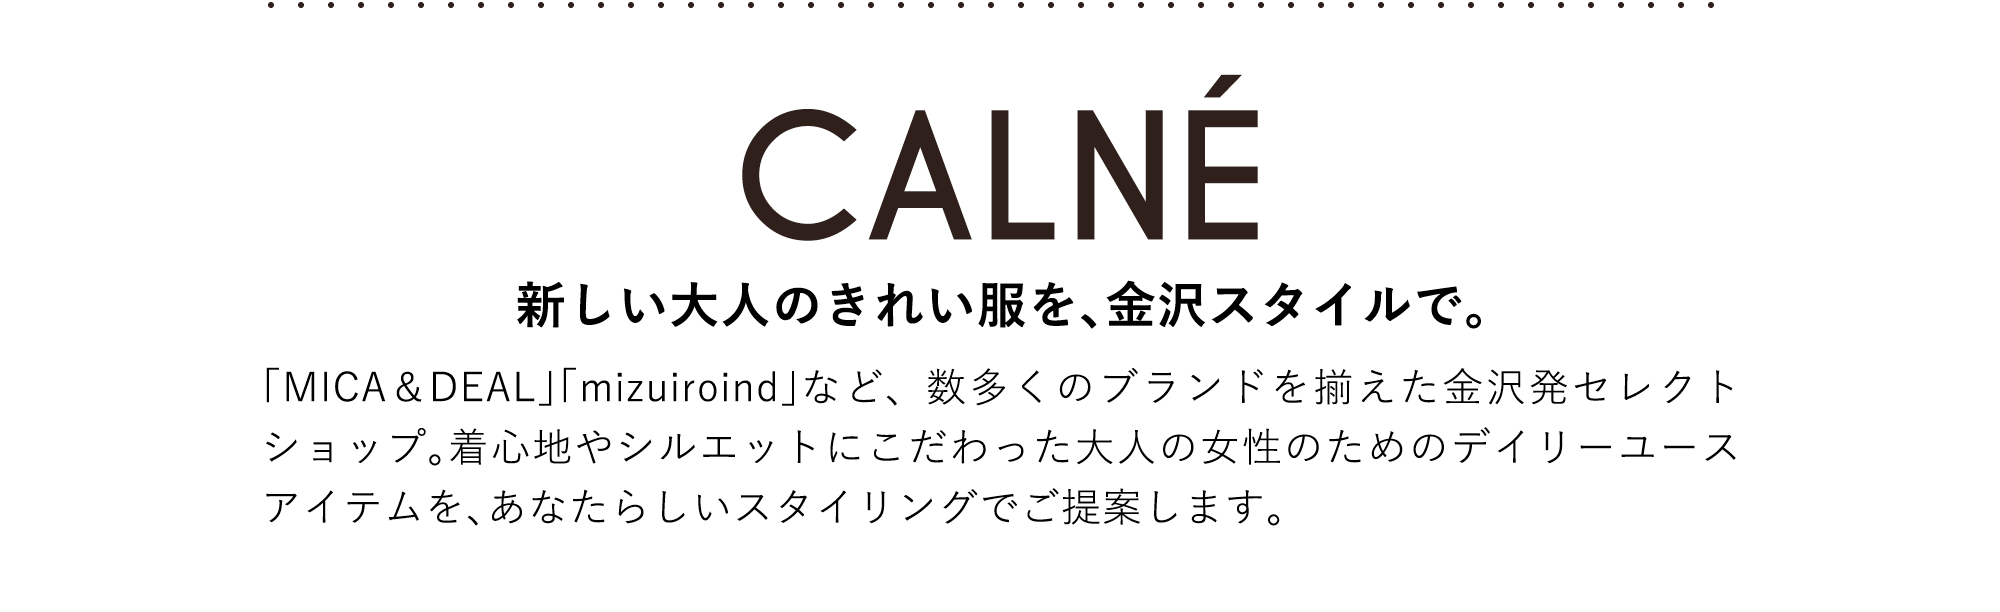 CALNE 新しい大人のきれい服を、金沢スタイルで。